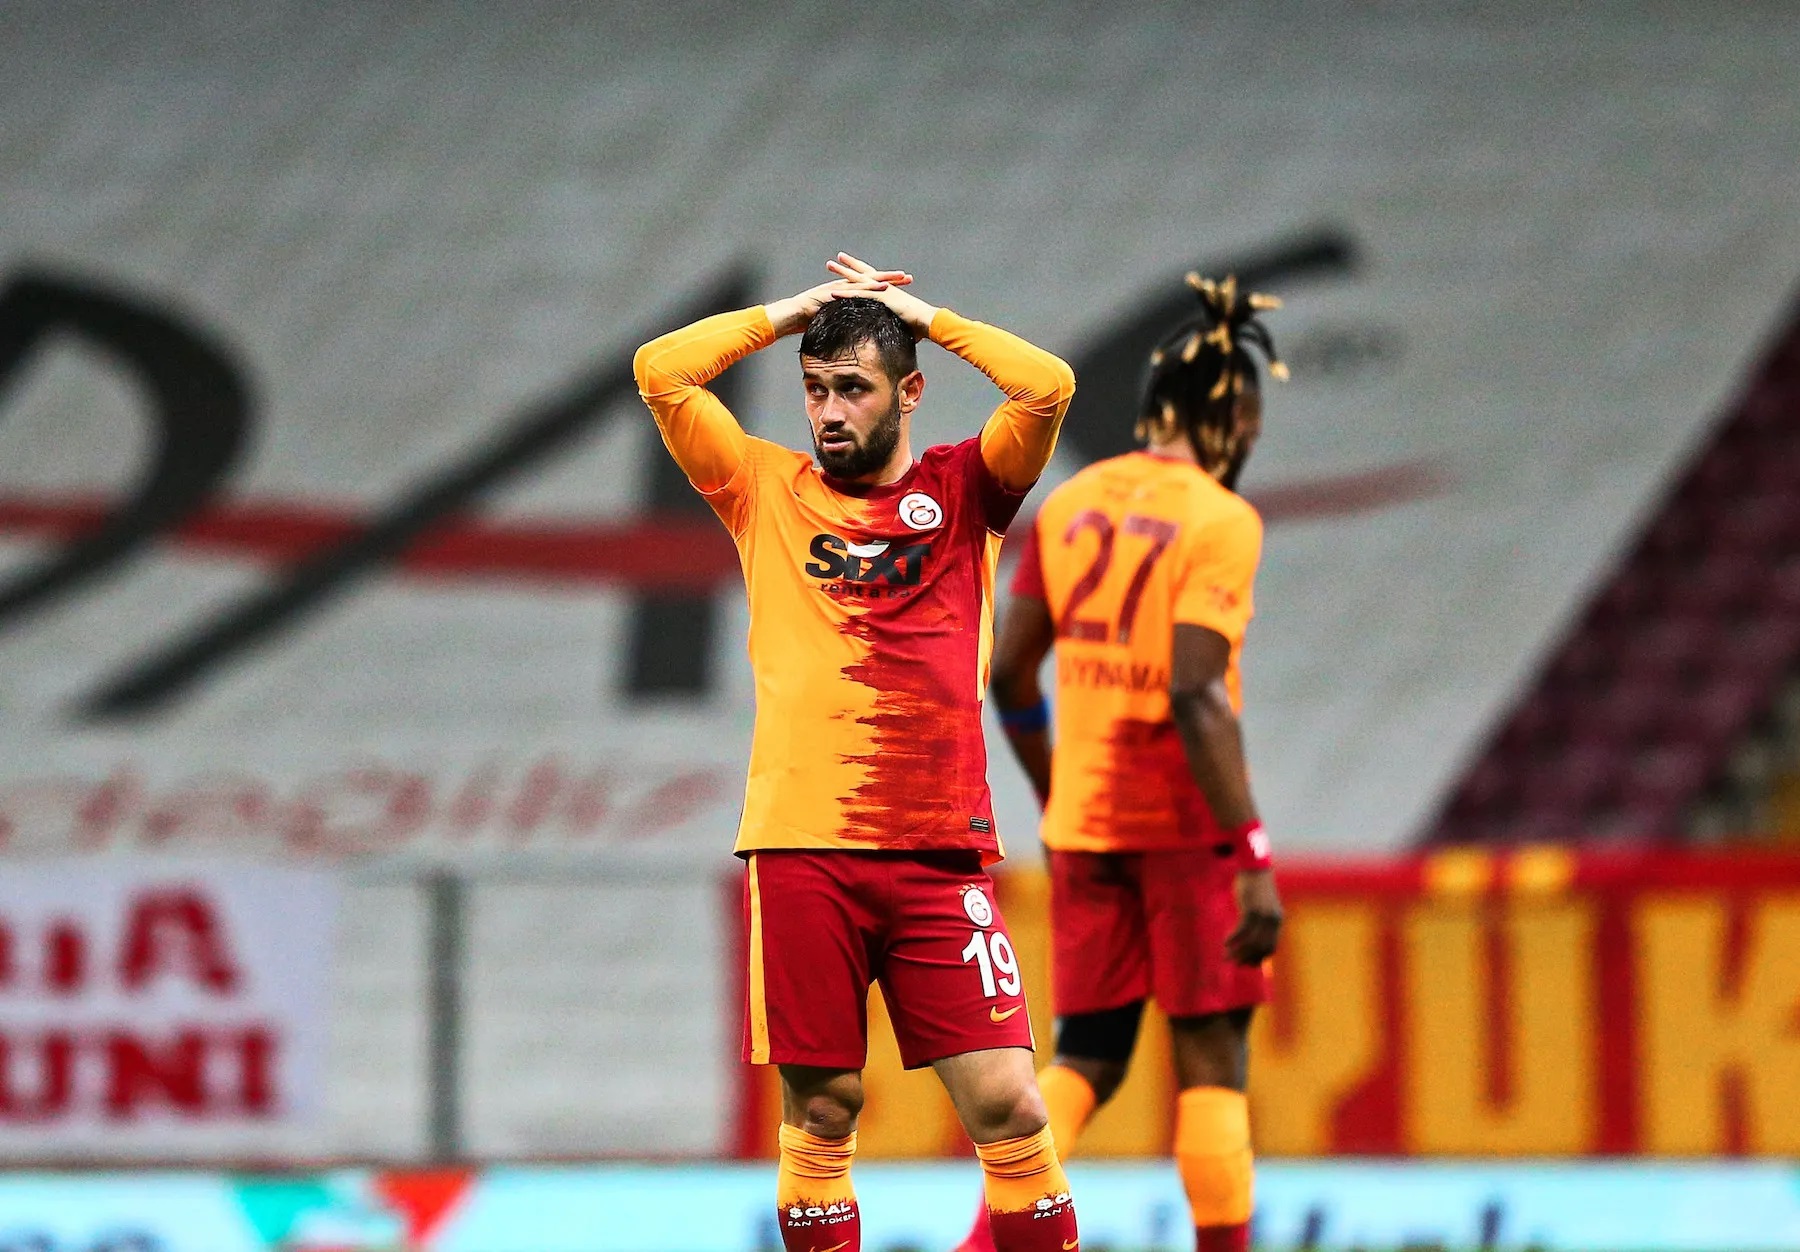 Galatasaray clinch 23rd Turkish league title